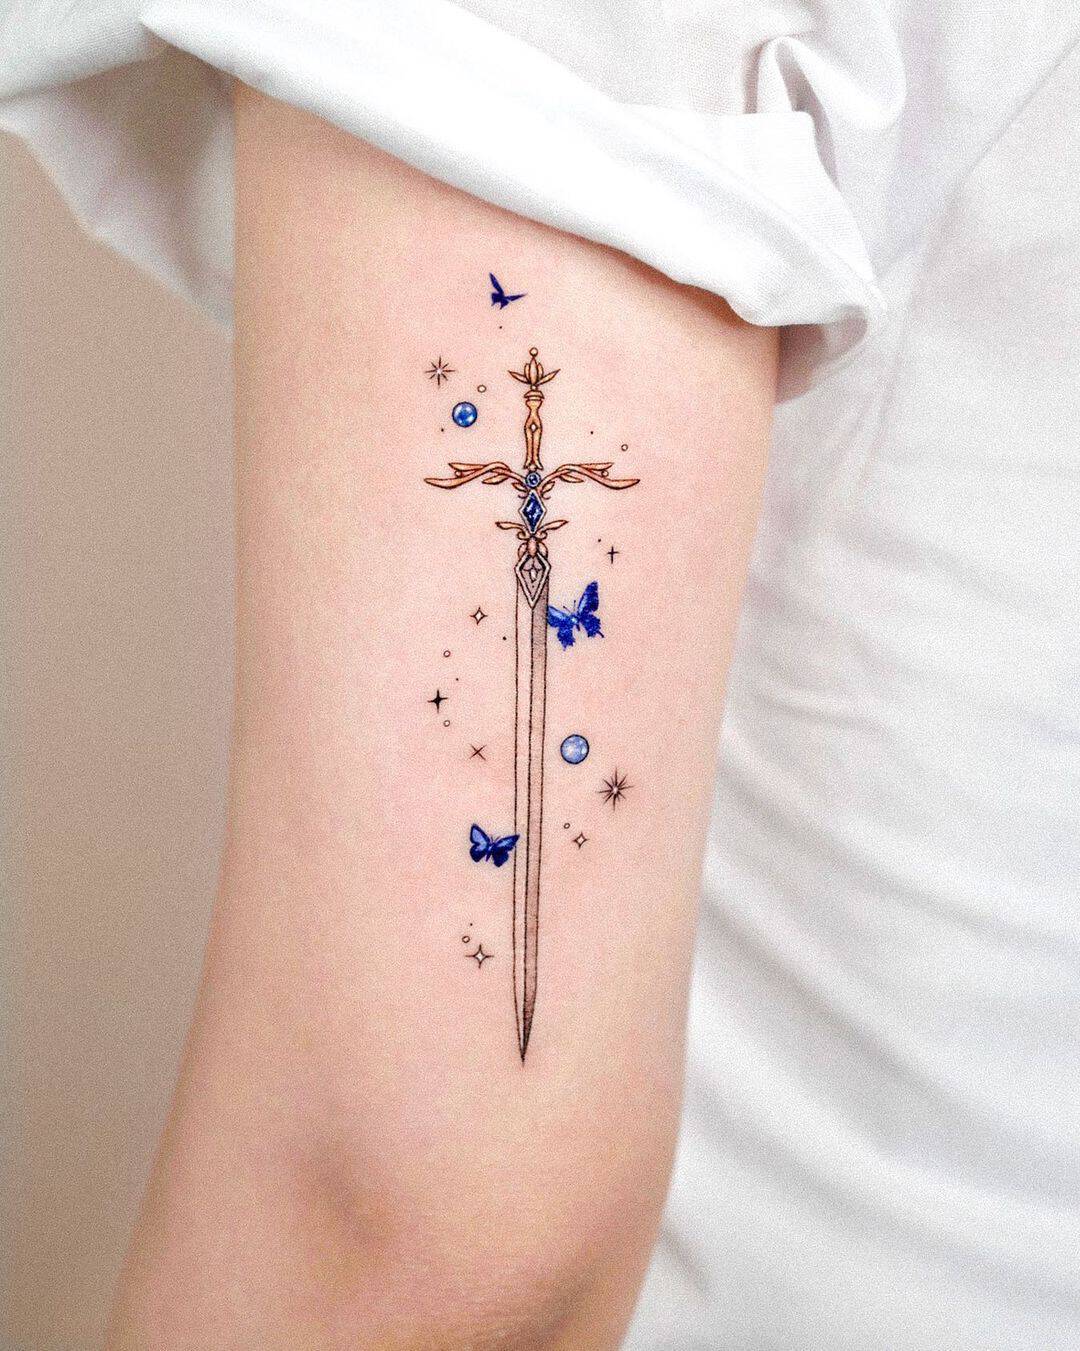 MInimalistic star tattoo by tattooist solar